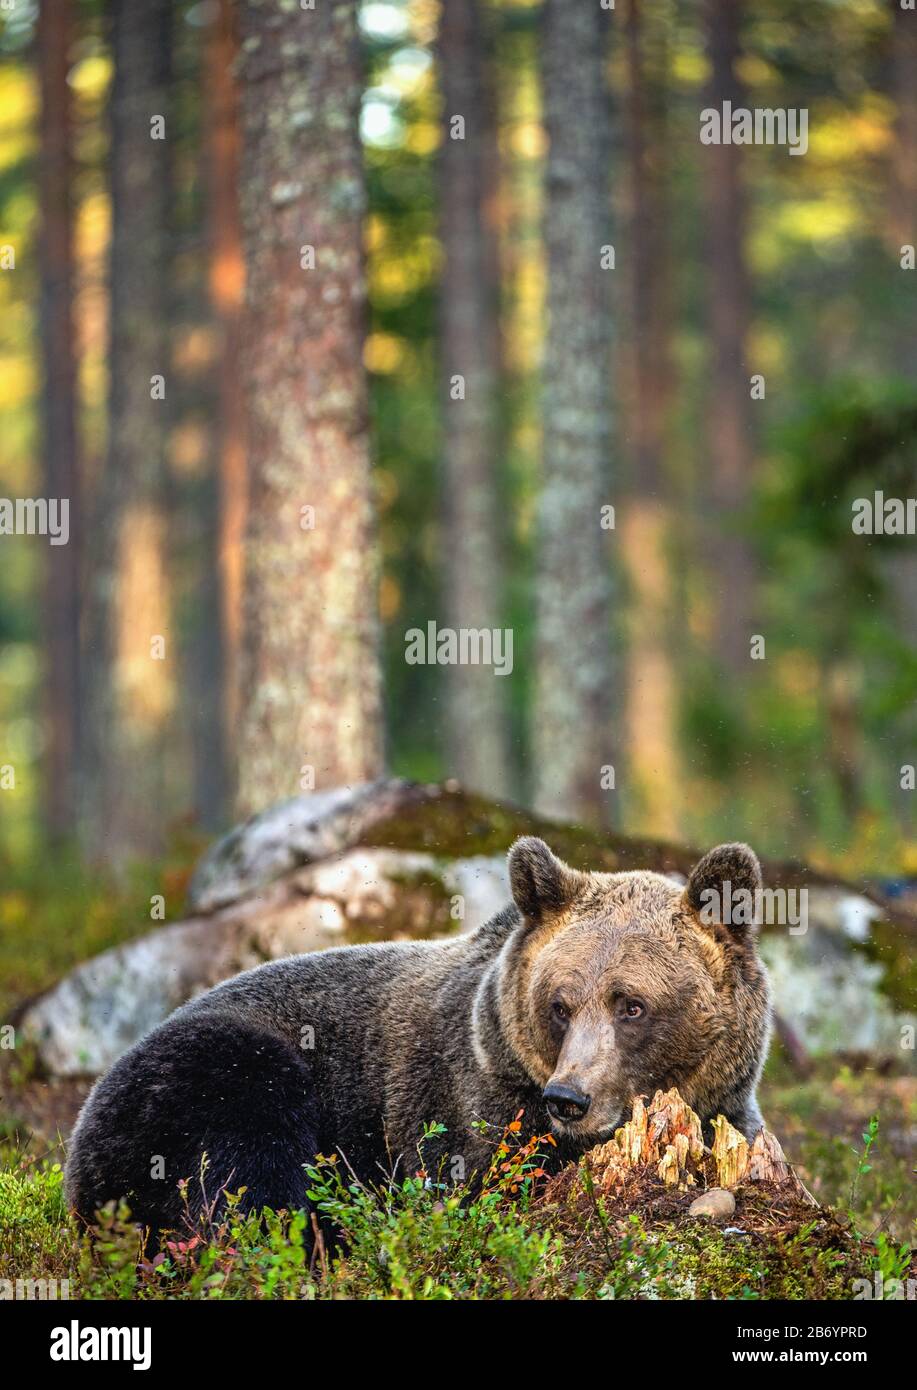 Un ours brun dans la forêt d'été au coucher du soleil. Nom scientifique: Ursus arctos. Habitat naturel. Banque D'Images